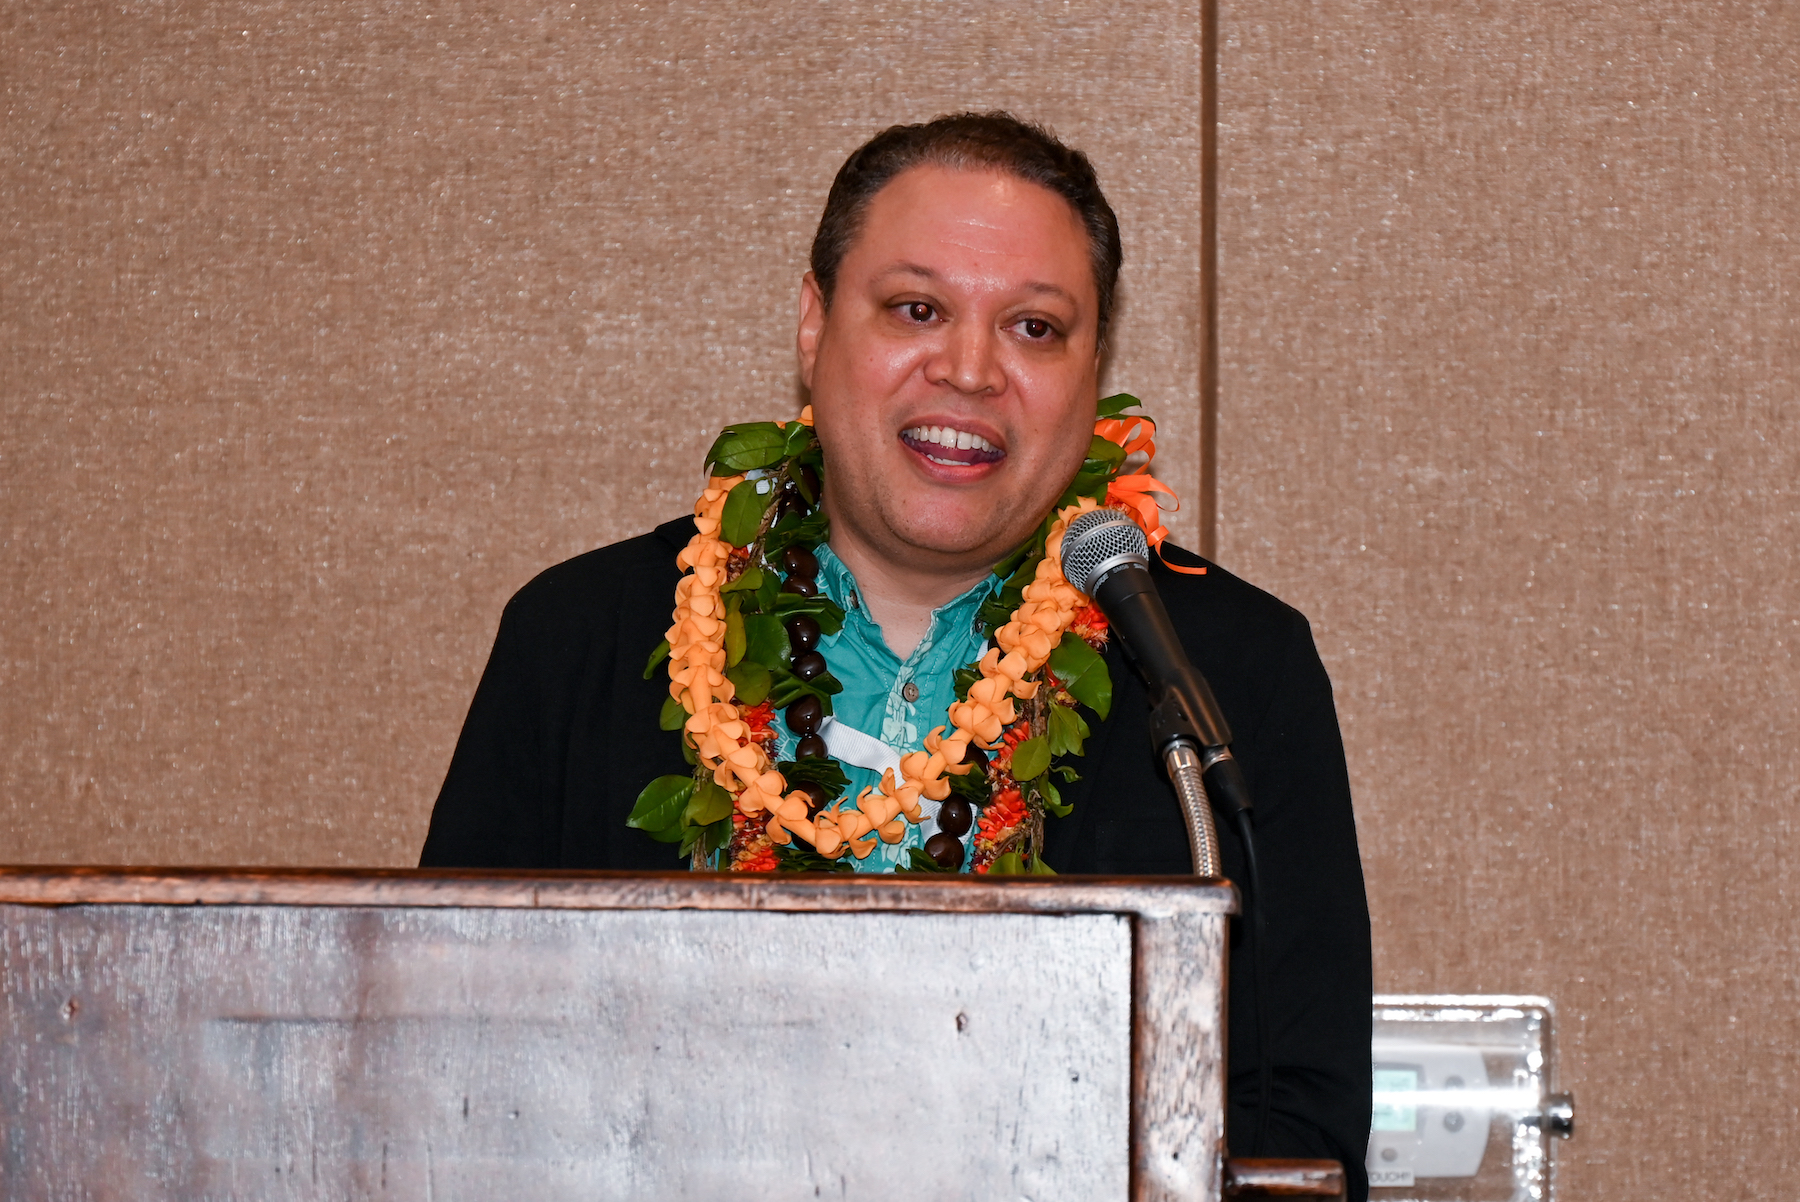 Dr. Alika Maunakea at podium wearing lei